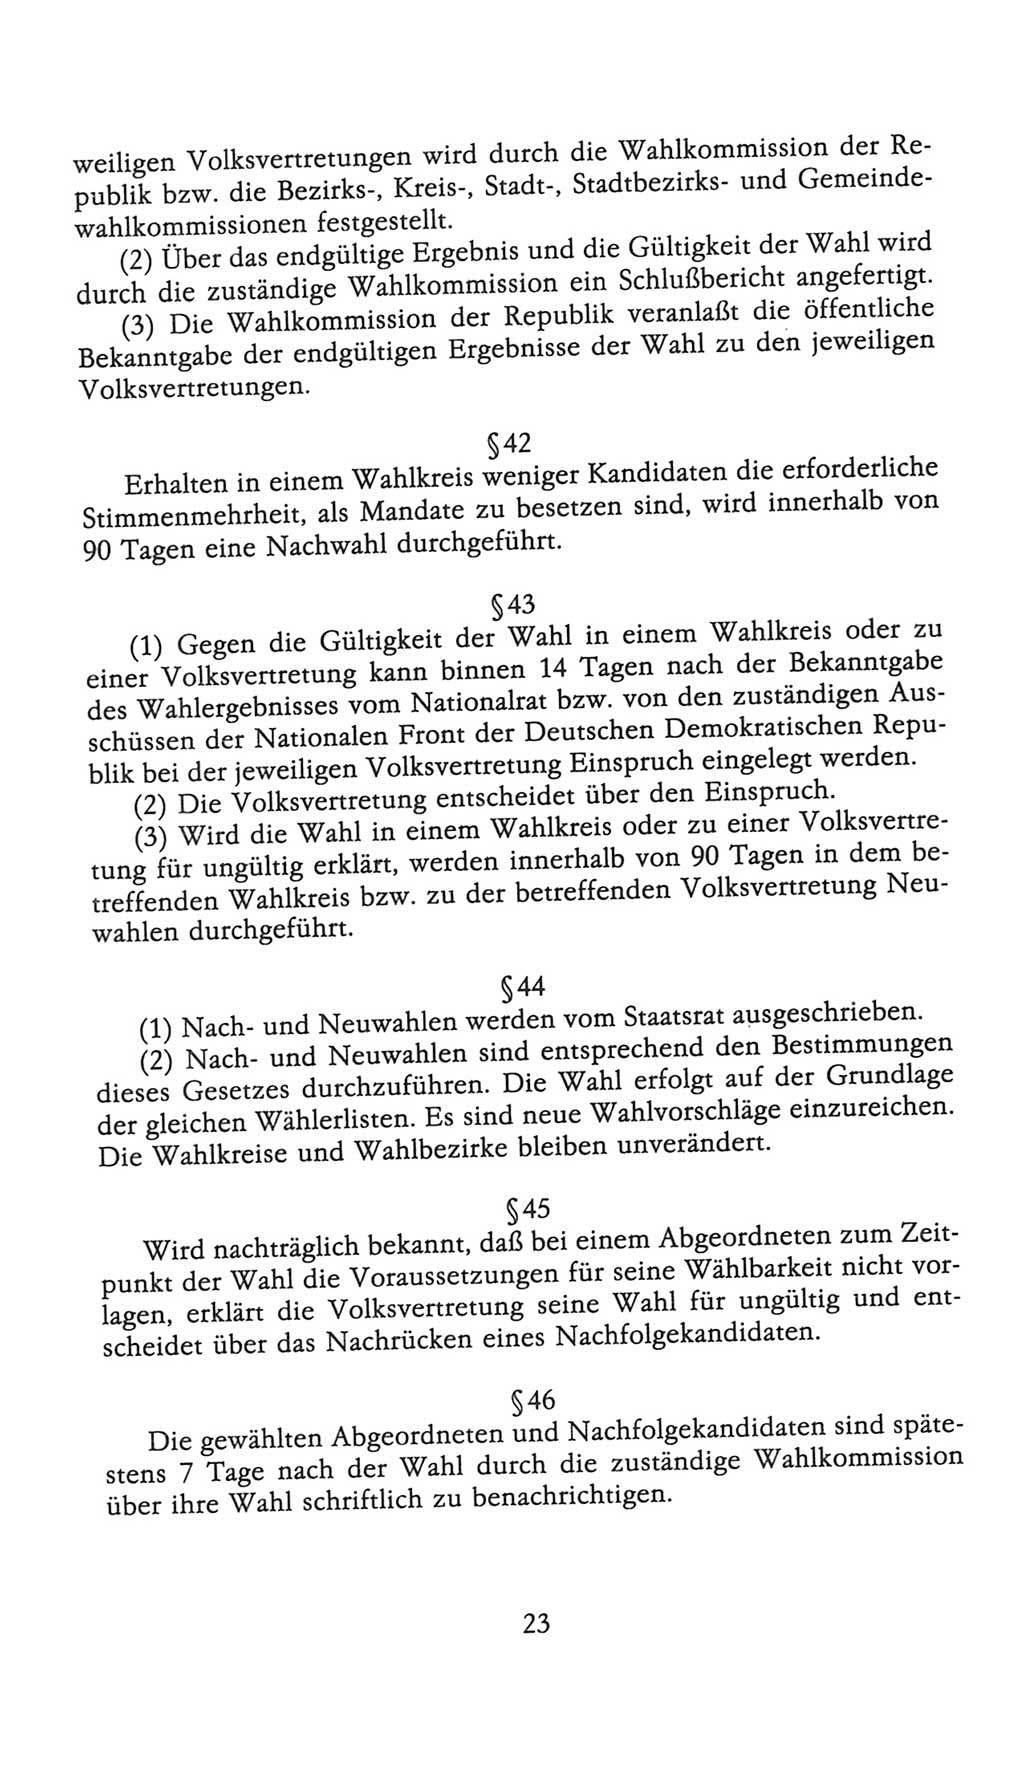 Volkskammer (VK) der Deutschen Demokratischen Republik (DDR), 9. Wahlperiode 1986-1990, Seite 23 (VK. DDR 9. WP. 1986-1990, S. 23)